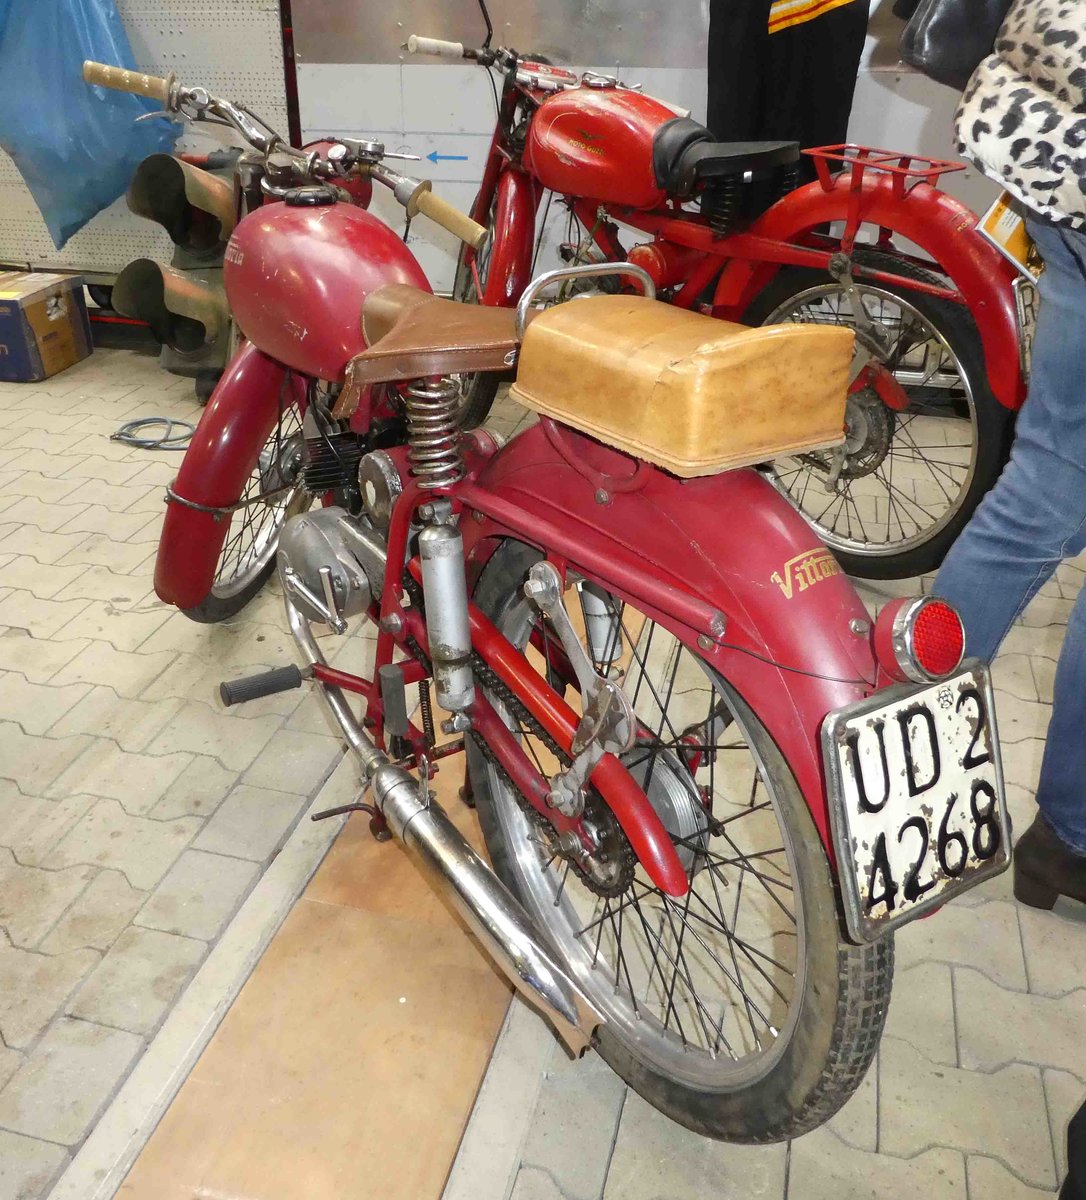 =Vittoria-Moped, ausgestellt bei der Technorama Kassel im März 2019